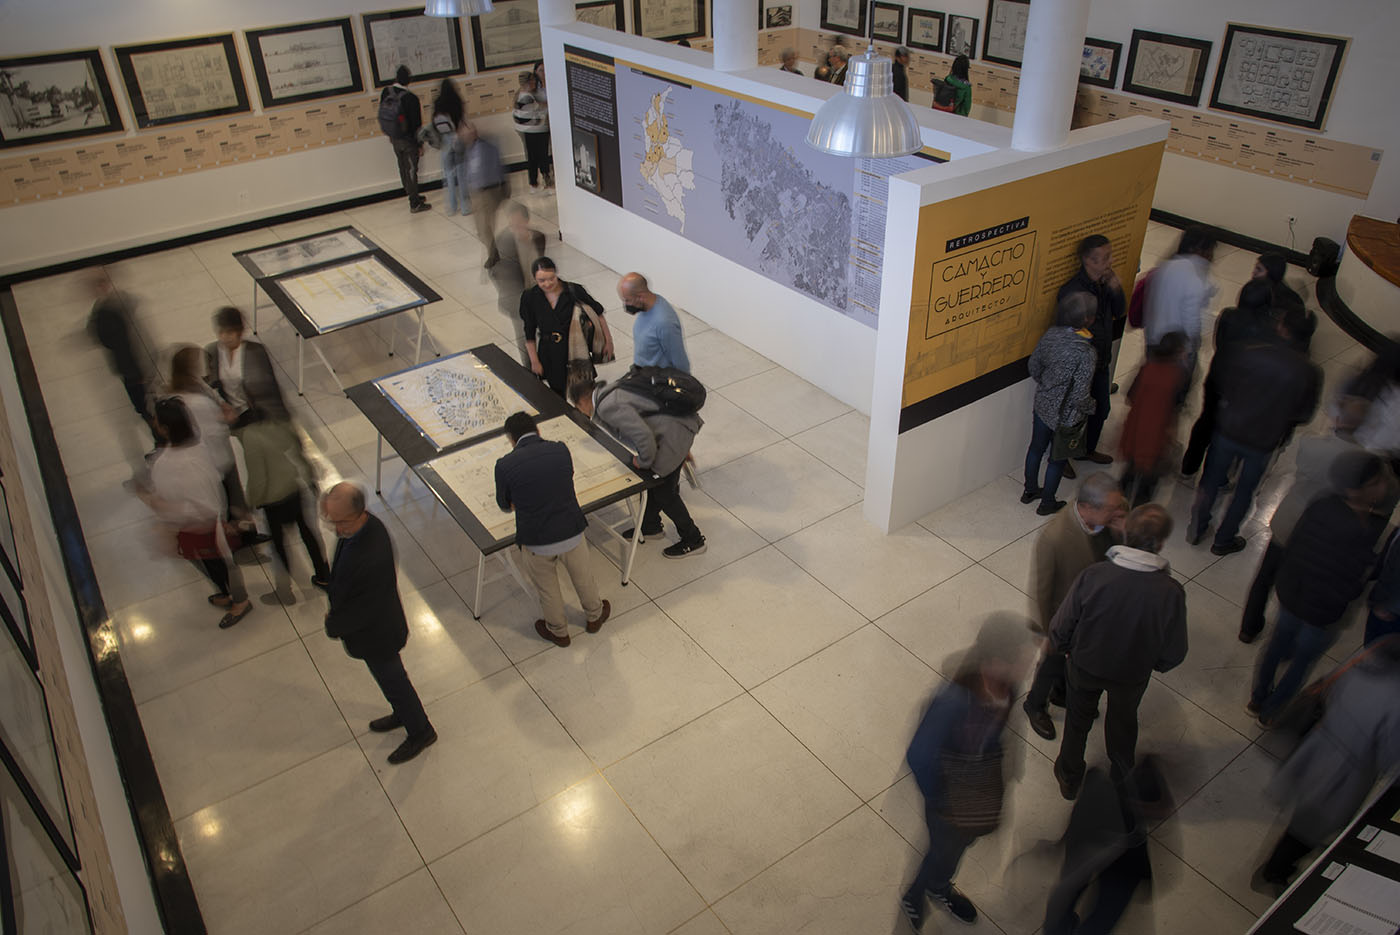 Exposición “Retrospectiva, Camacho y Guerrero Arquitectos”, realizada en el Museo Leopoldo Rother. Foto: Nicol Torres, Unimedios.